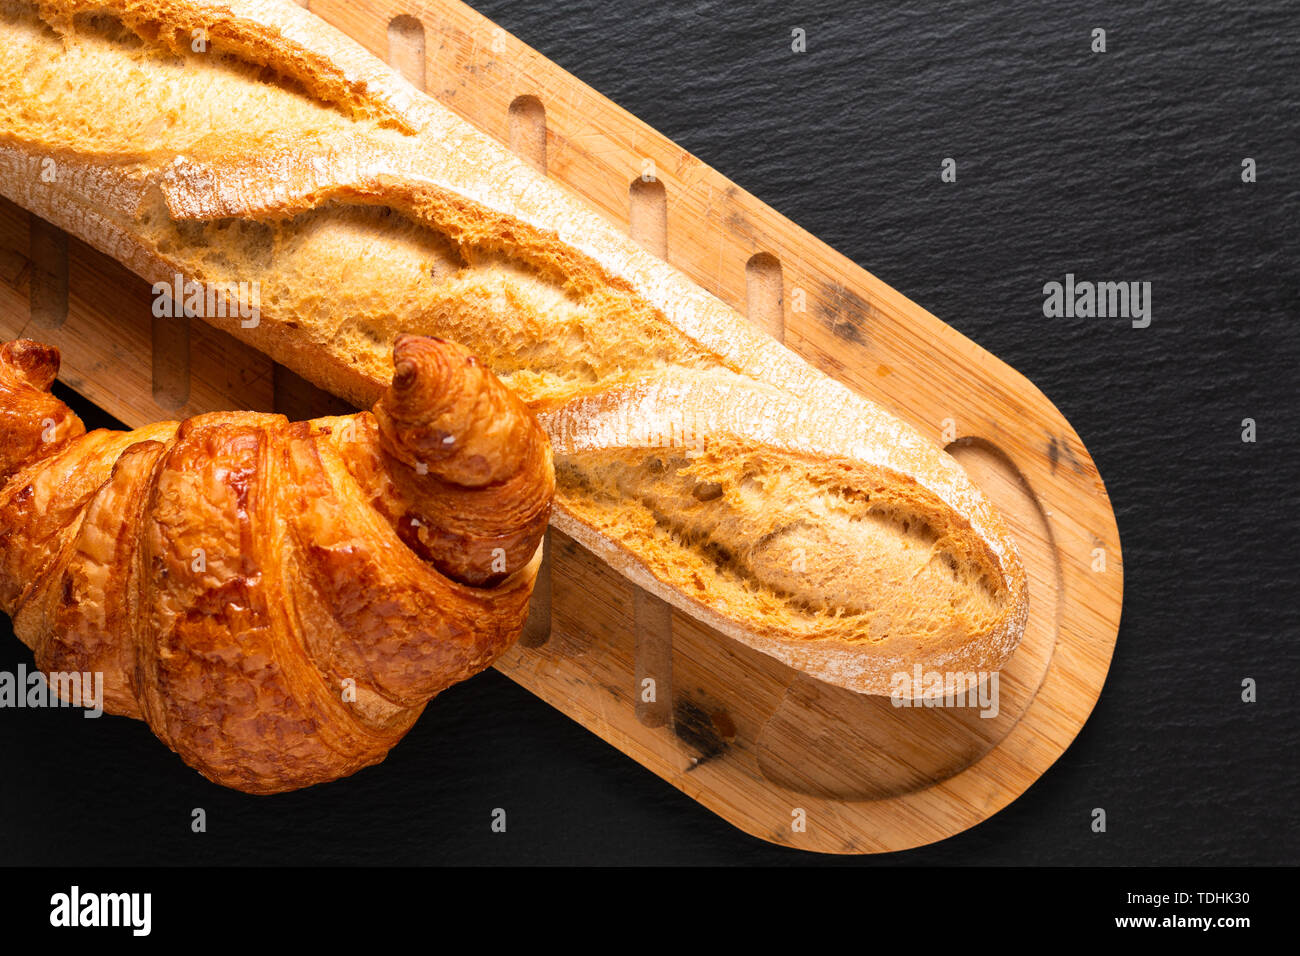 Concetto di cibo francese croissant e baguette su ardesia nera con scheda spazio di copia Foto Stock